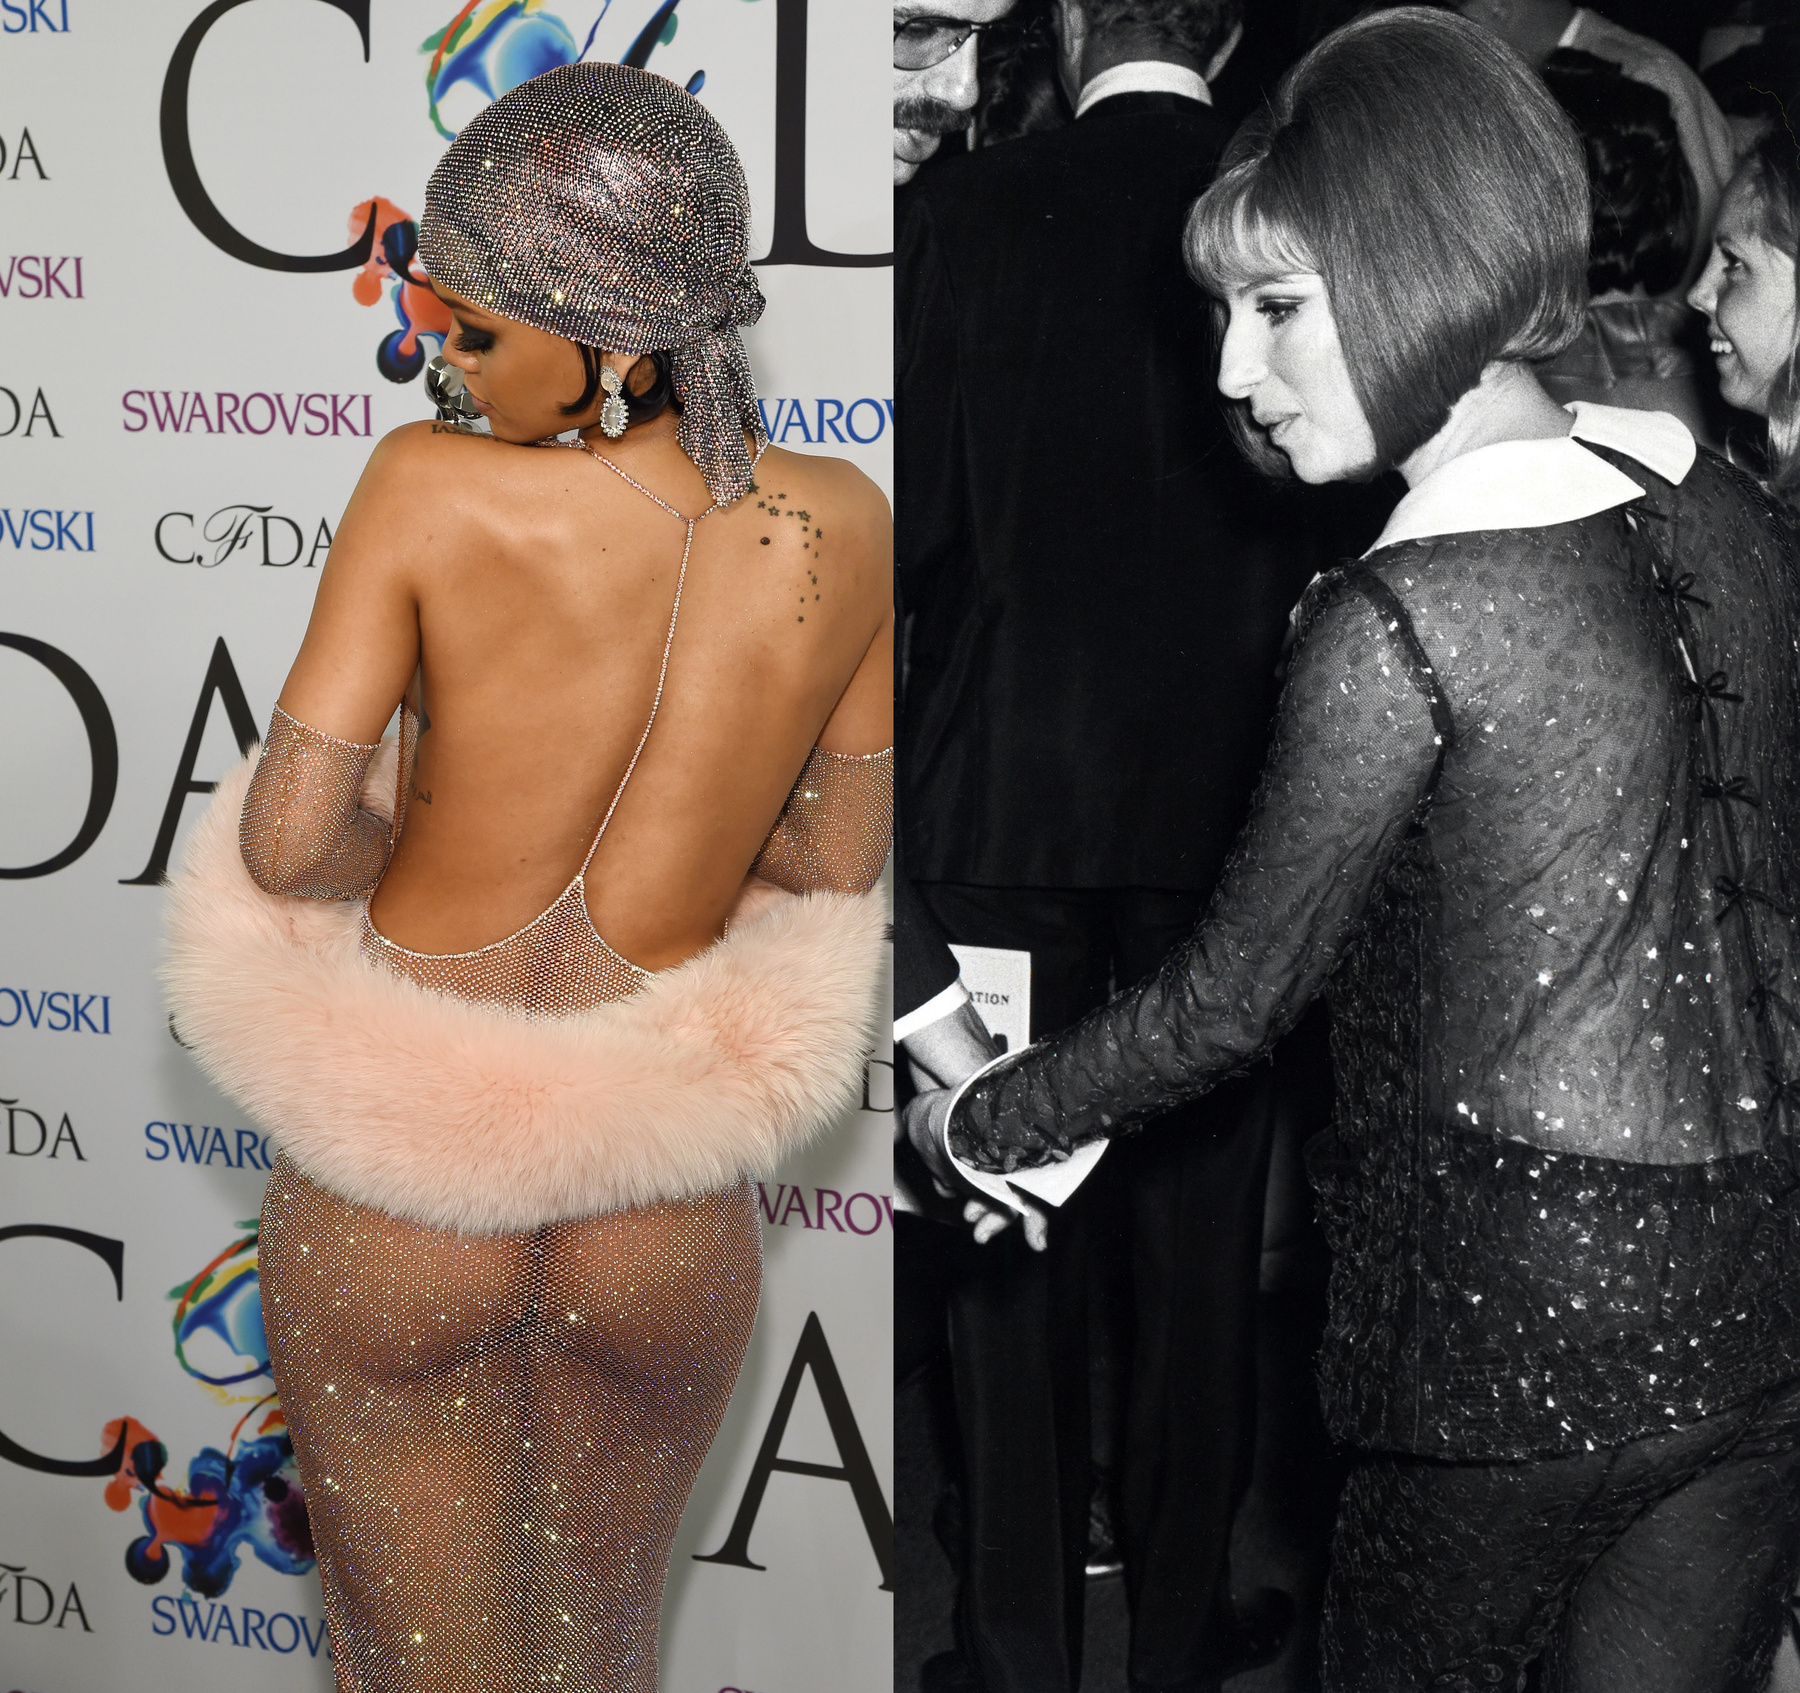 Anna Wintour lánya, Bee Shaffer pedig a Rihanna szettje miatt emlékezetes CFDA-n vette fel ugyanazt. Kin mutat jobban?